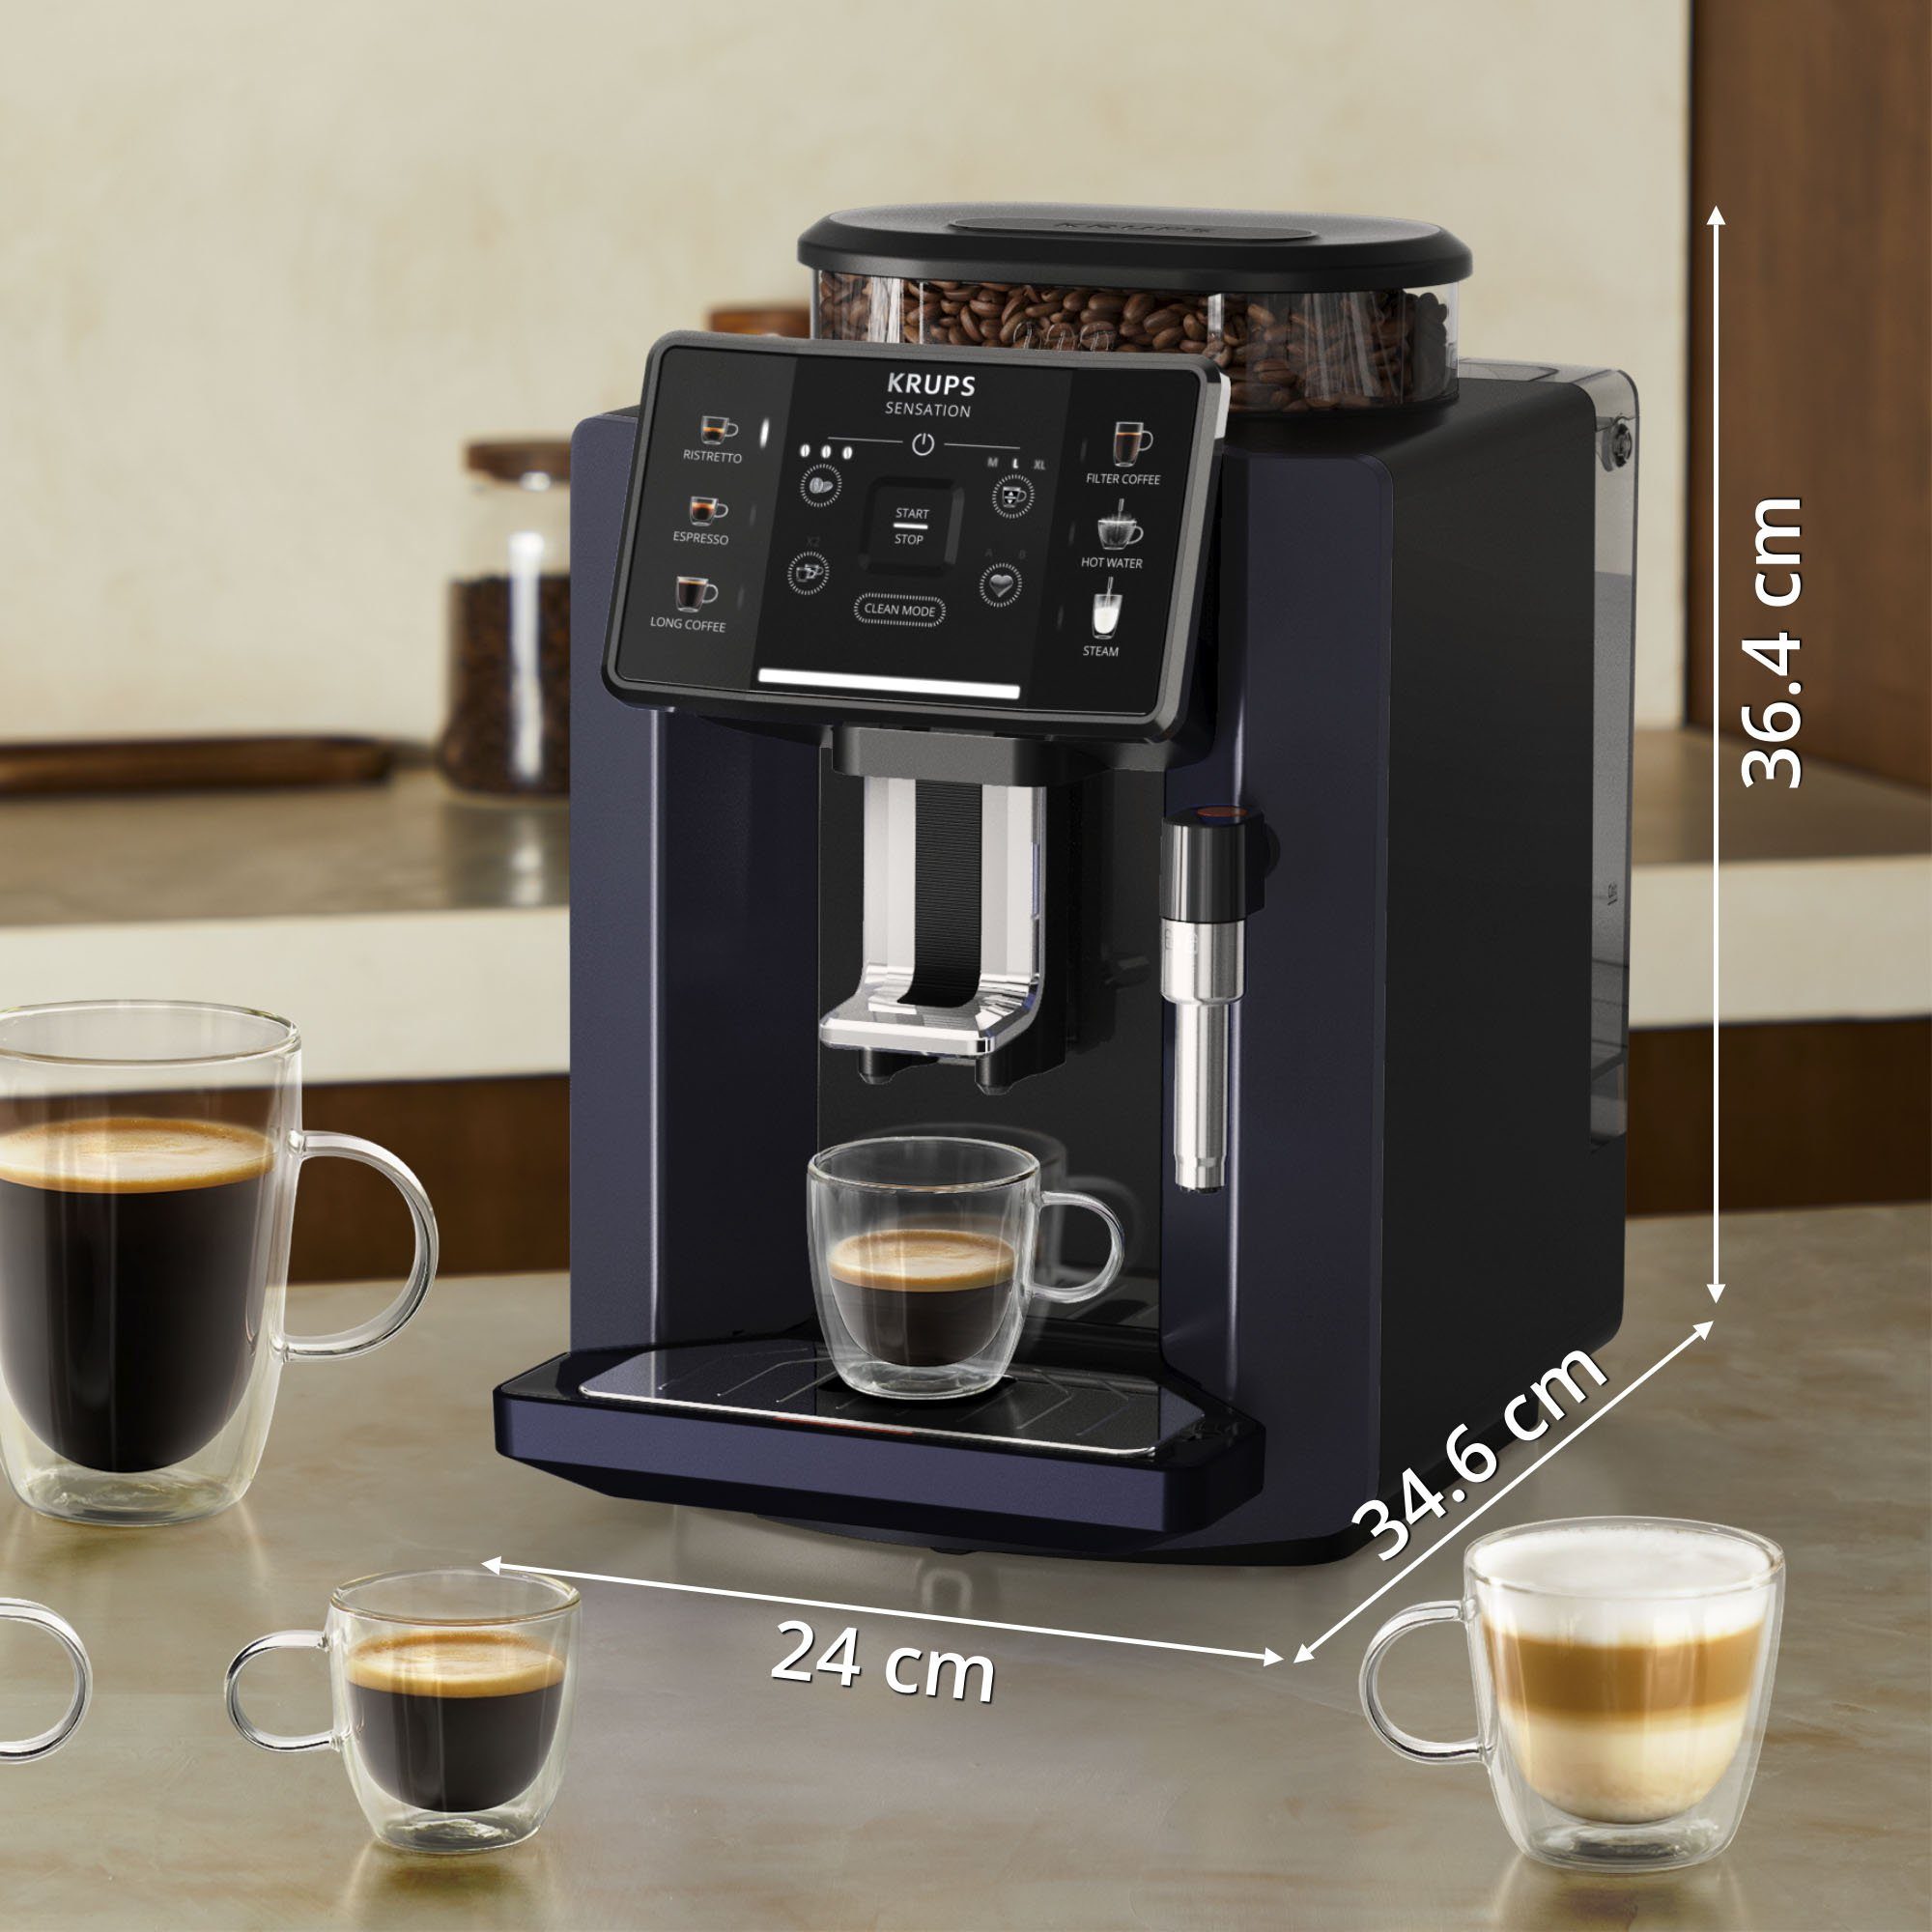 Bundle, Kaffeevollautomat Milchaufschäumer Krups Milk EA910B.23 Sensation im von Wert UVP 79,99 mit Krups